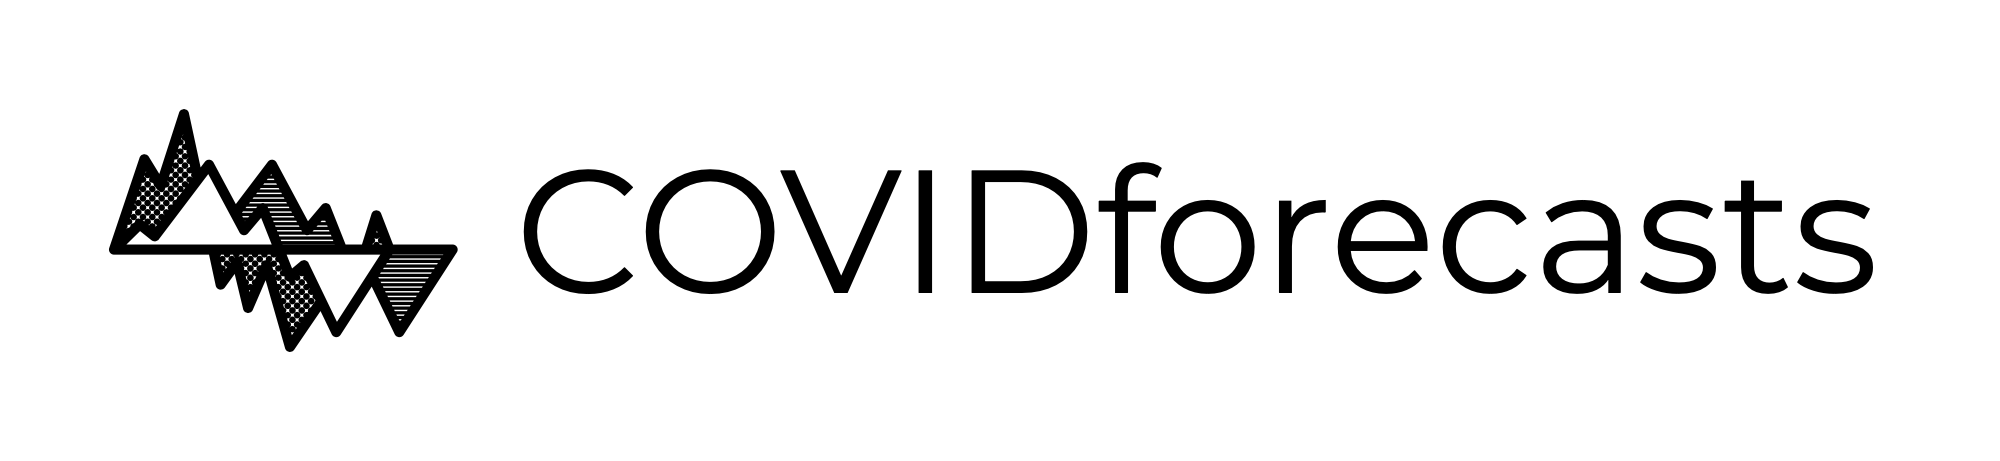 Covideas logo